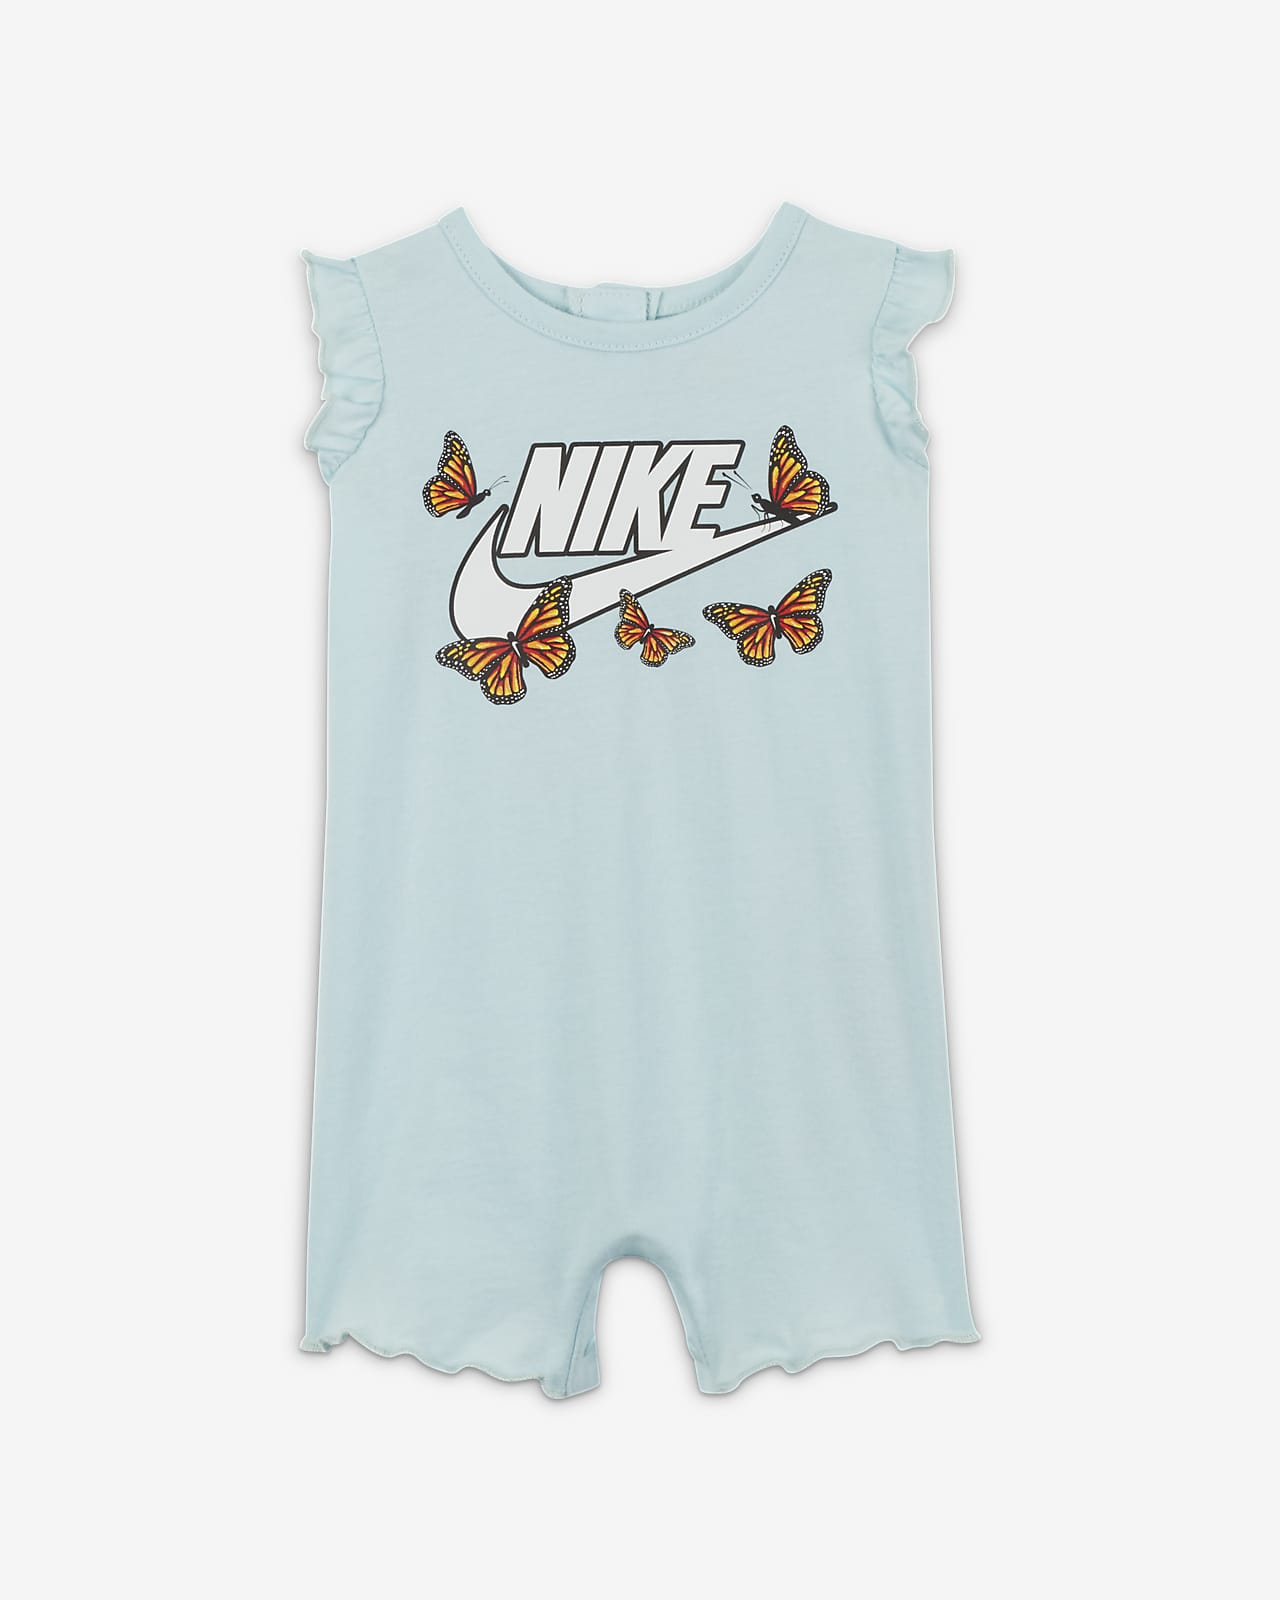 Nike "Little Bugs" Baby (0-9M) Romper